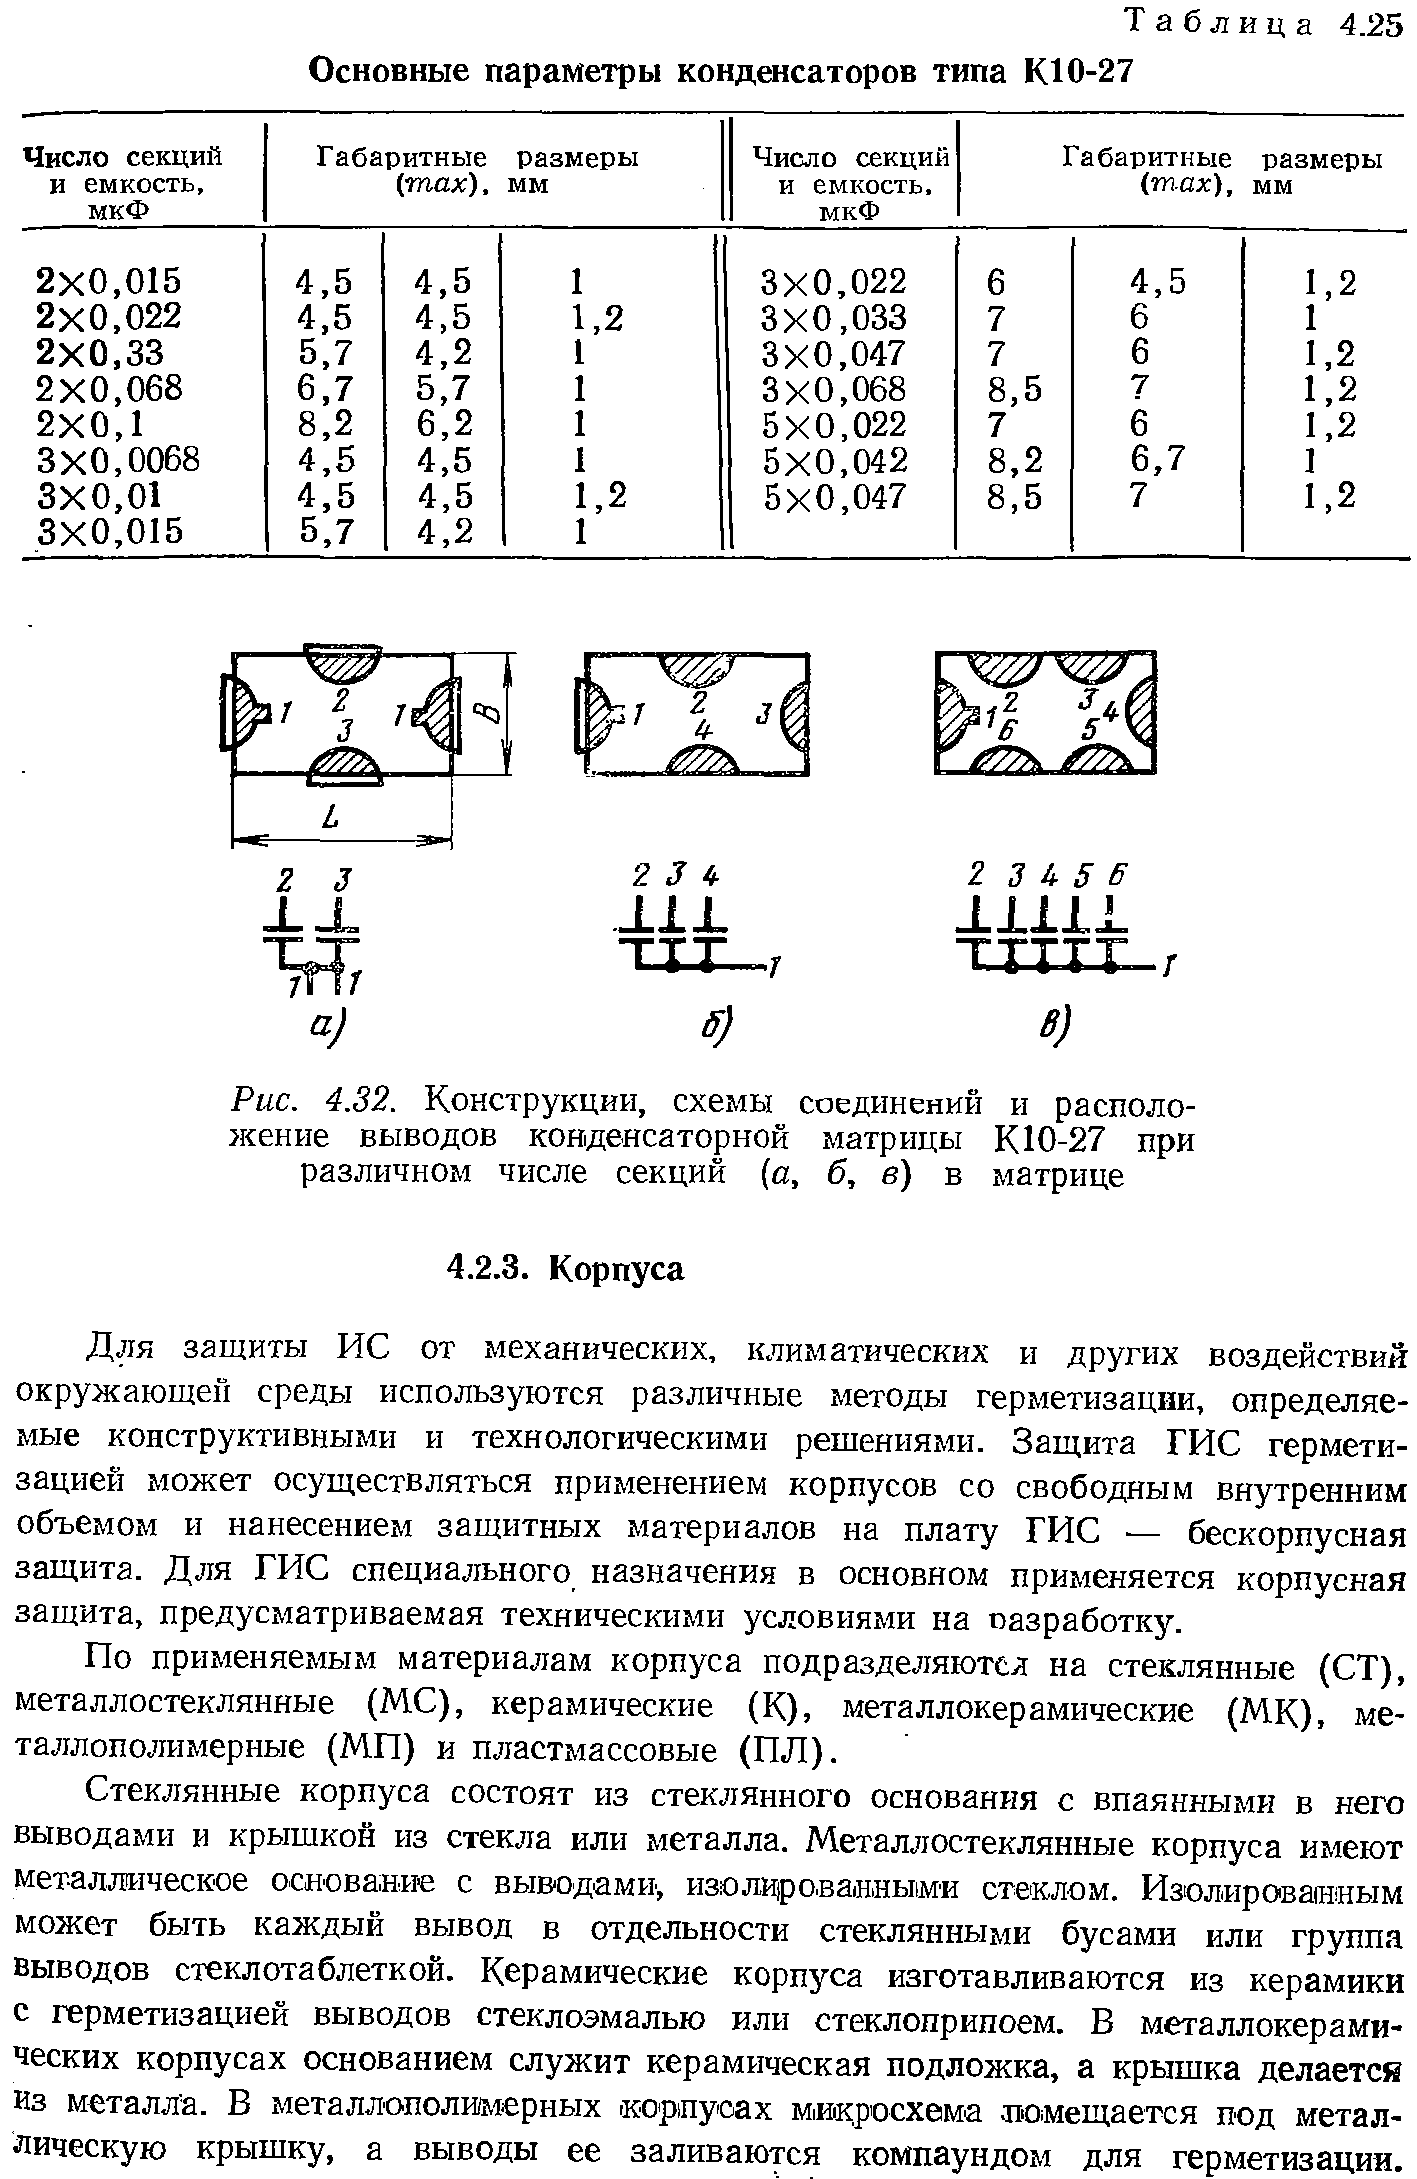 Таблица 4.25 Основные параметры конденсаторов типа КЮ-27
